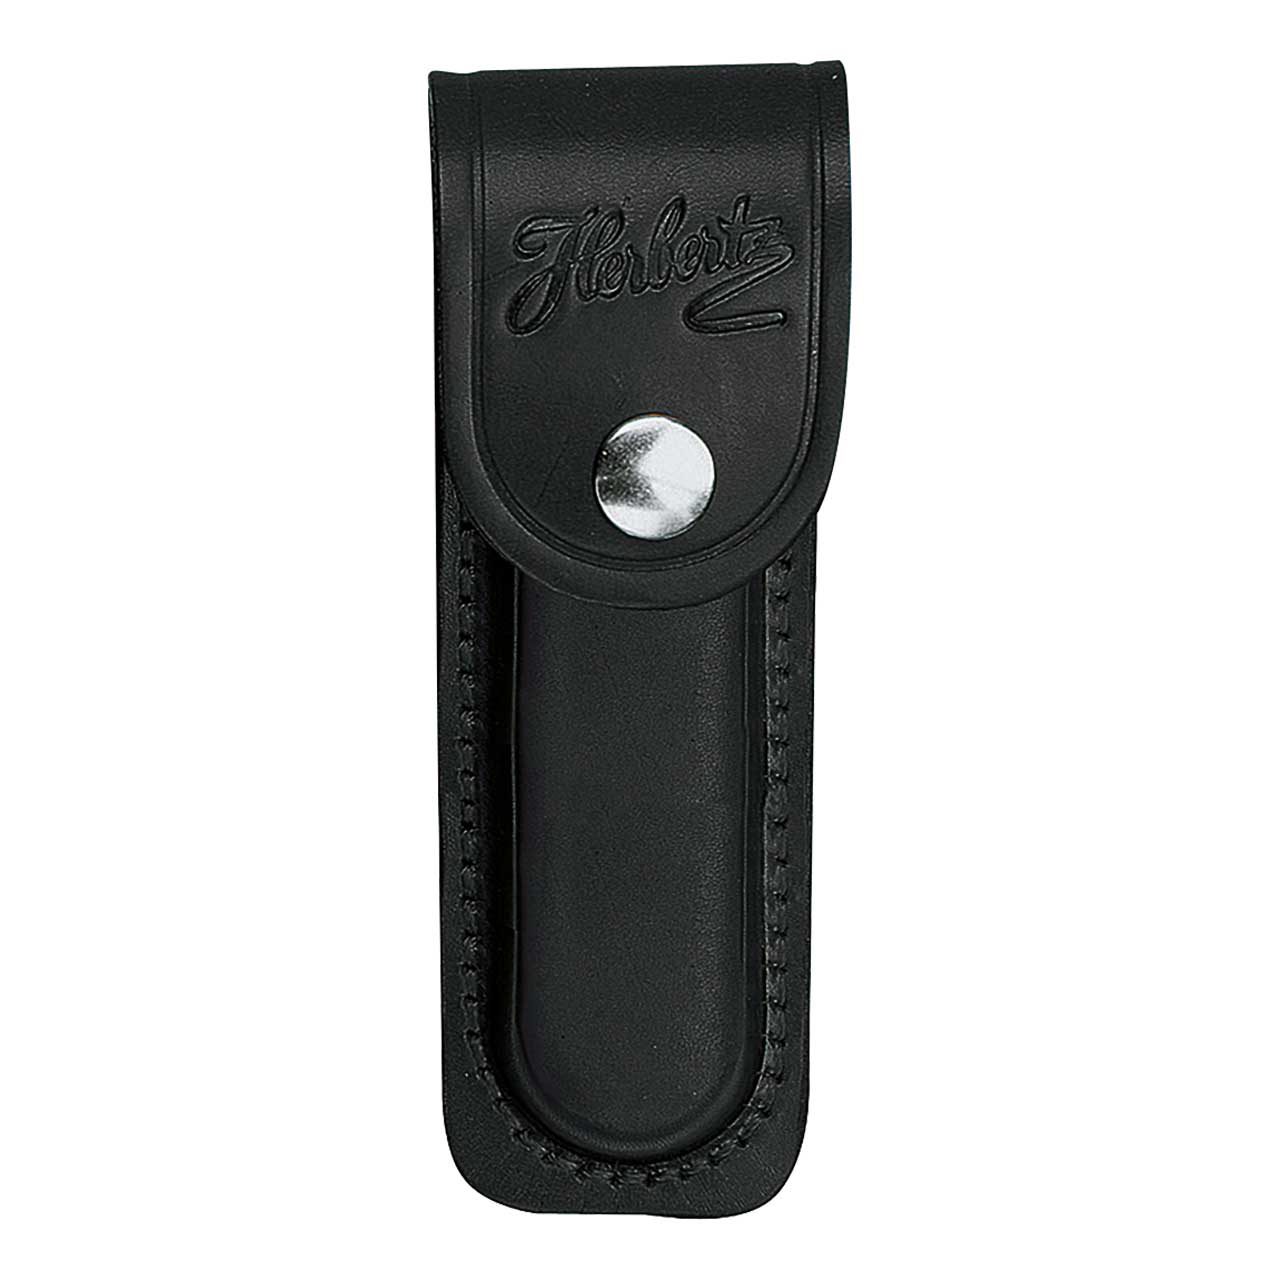 Picture of Herbertz - Leather Case Black for Stapler Length 11 cm